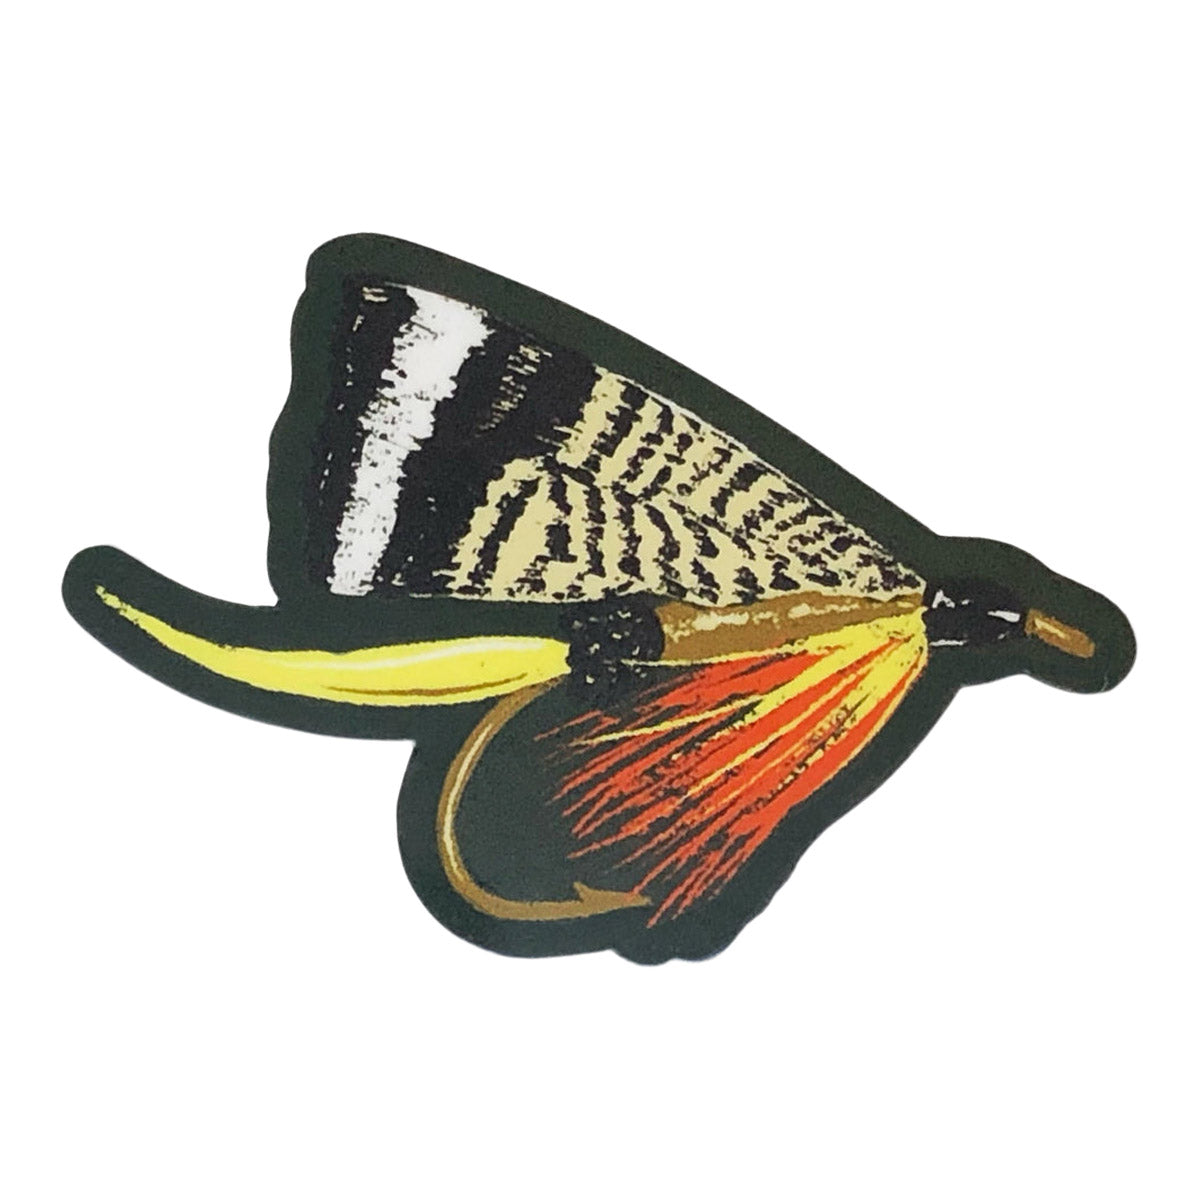 The Wild Wander Fly Sticker